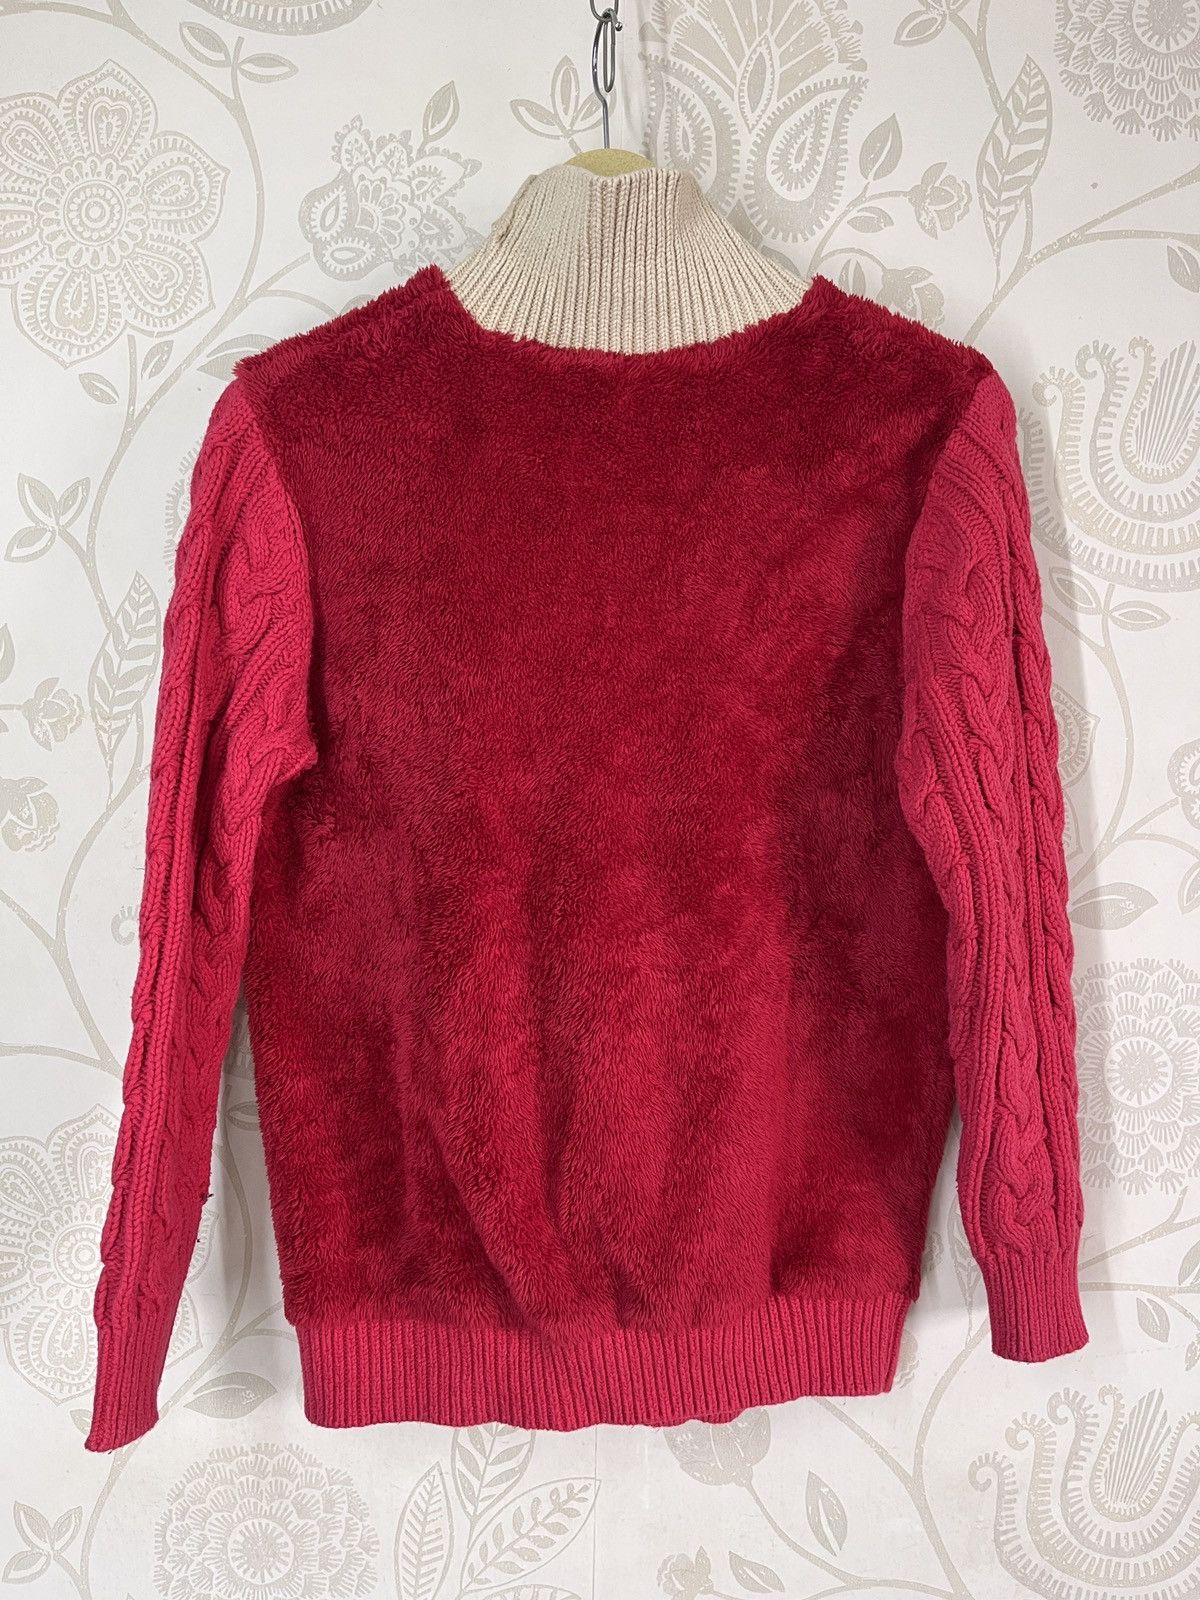 Undercover X Uniqlo Sweater Rare Red Colour - 21